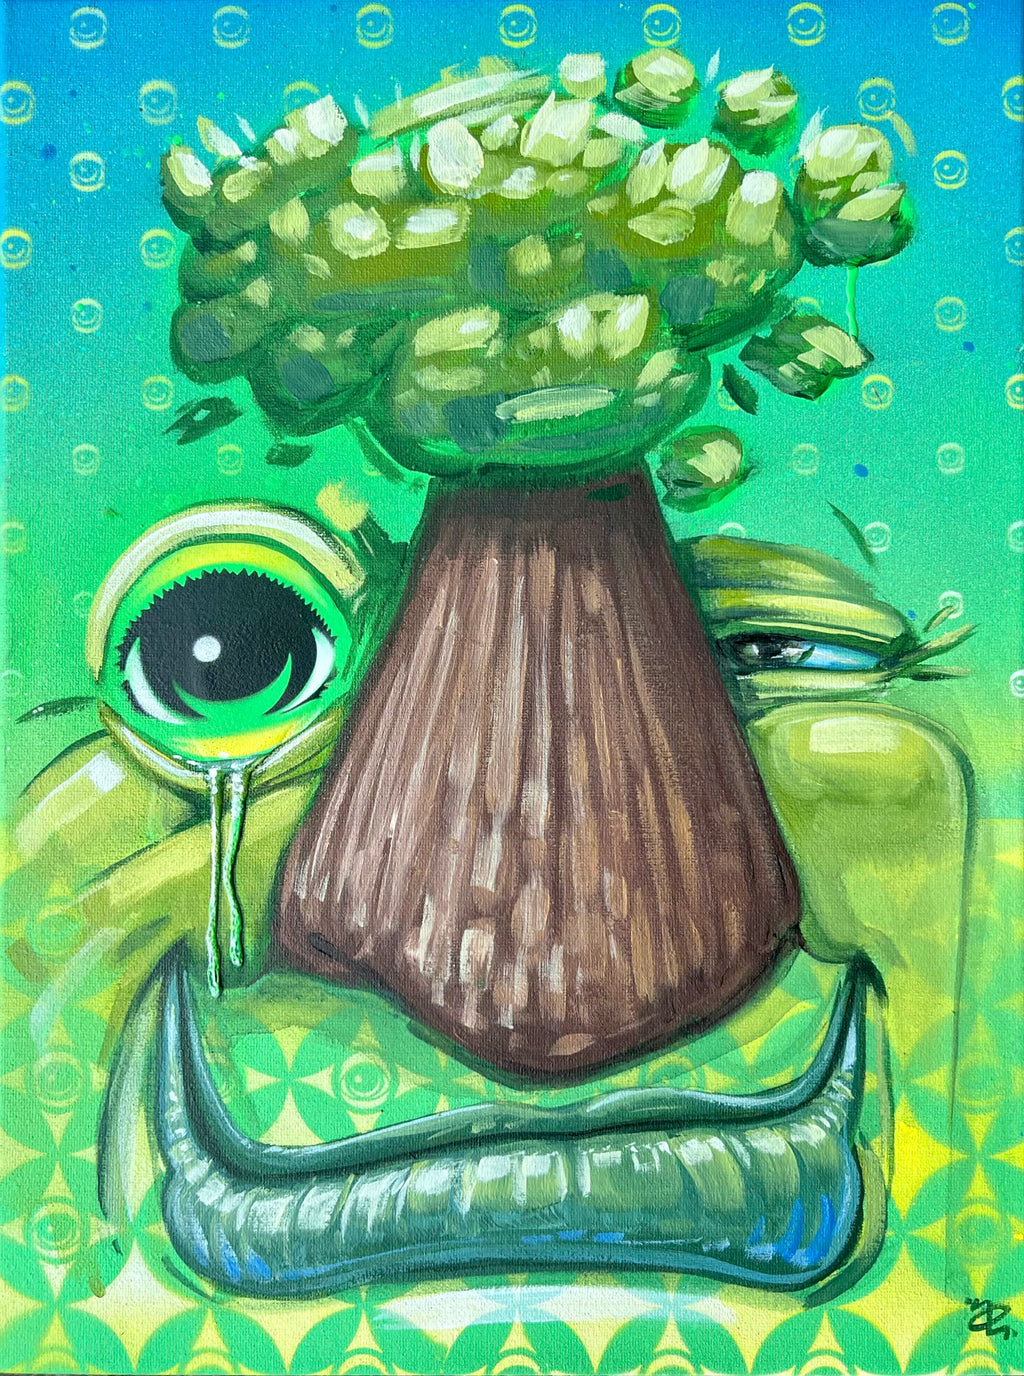 Alex Eickhoff @eye_cough "Tree Eyez" - @EYEZ C👁LLAB👁RATE Painting